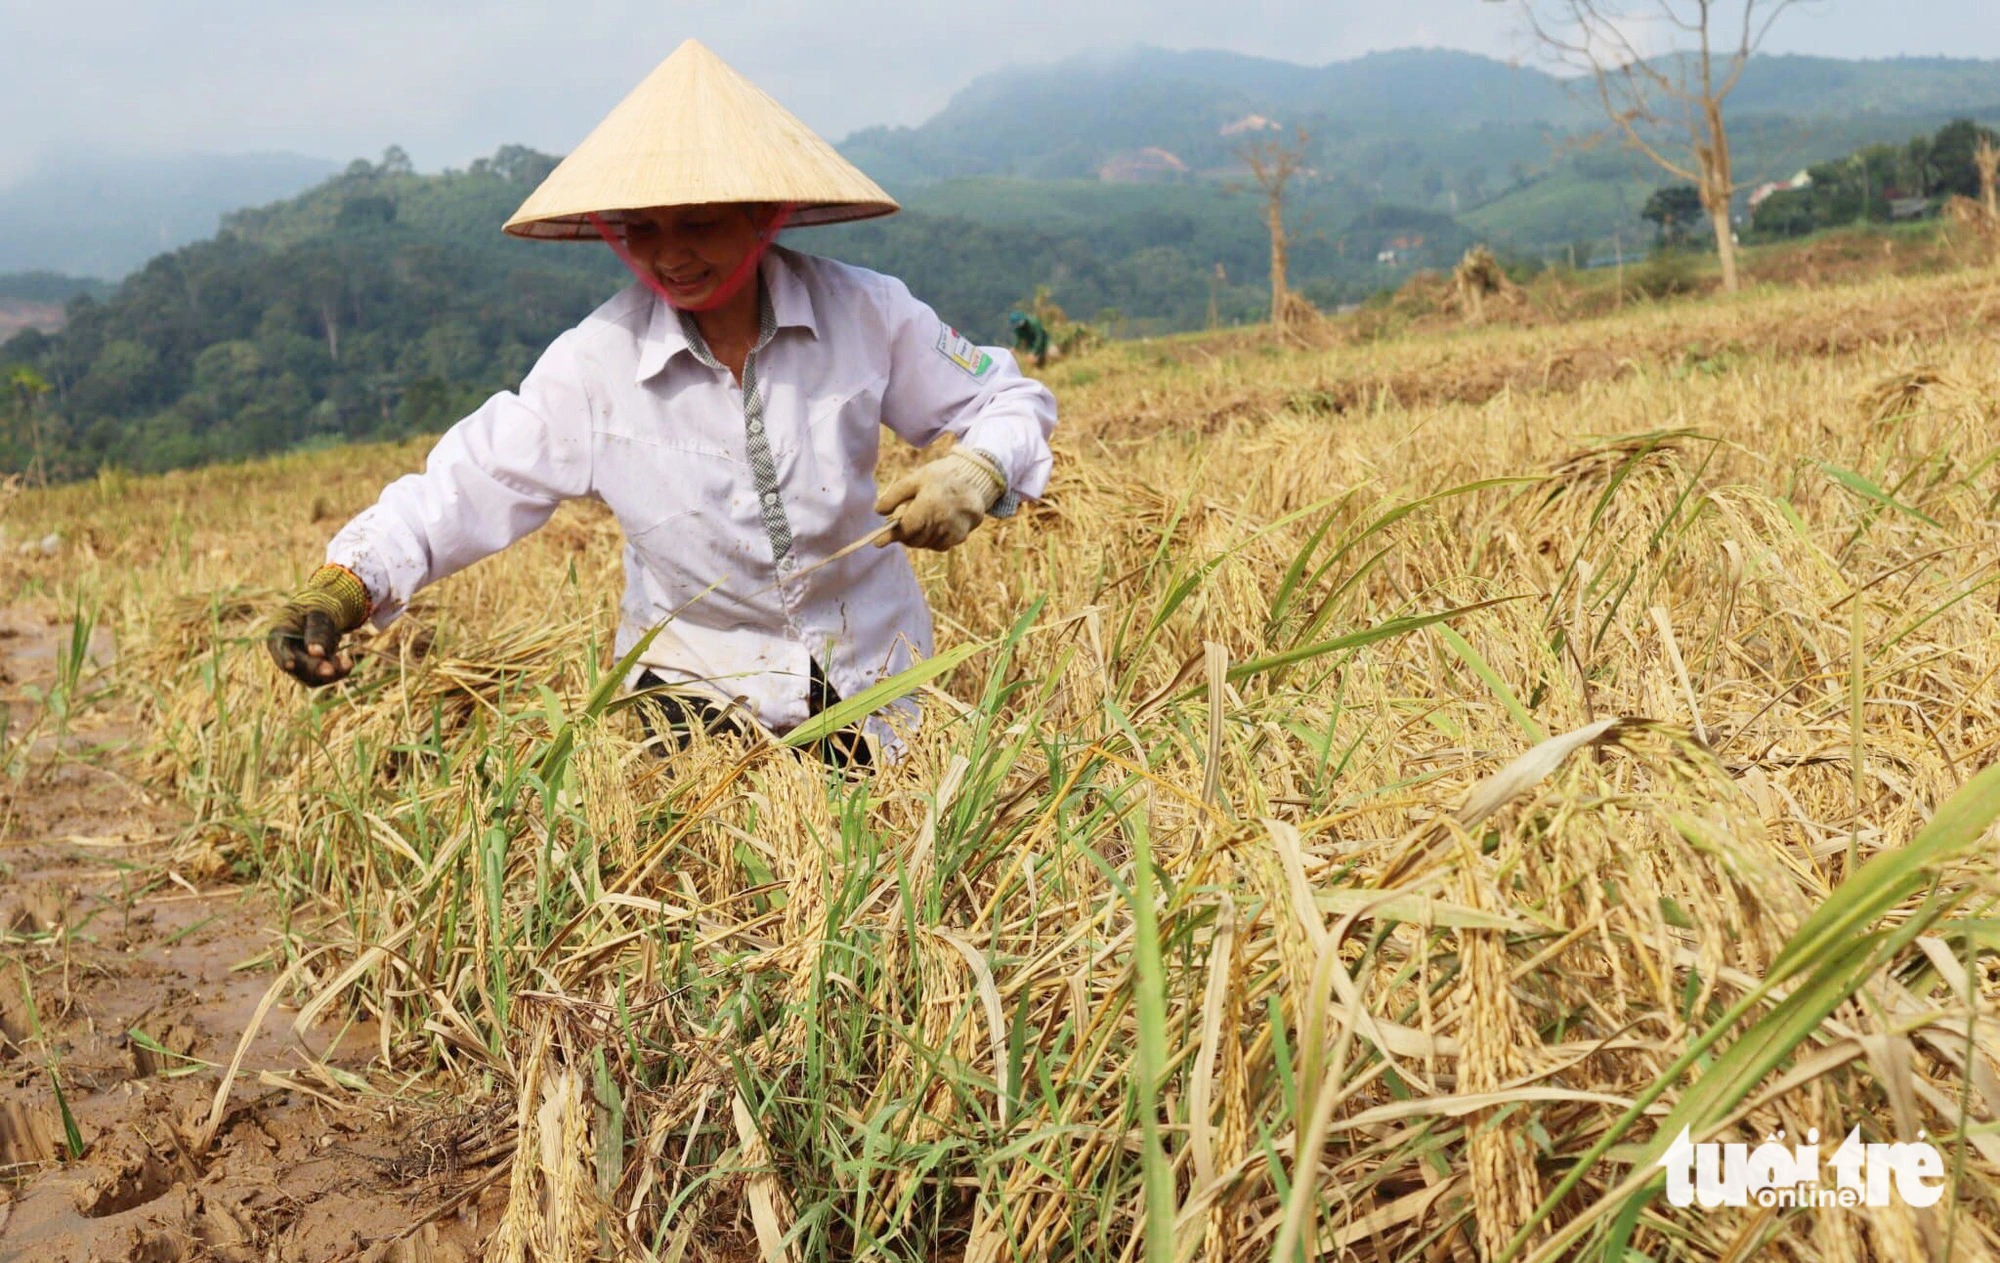 Ước tính tổng thiệt hại mưa lũ gây ra cho huyện Quỳ Châu, Nghệ An là hơn 177 tỉ đồng. Trong ảnh: Người dân Quỳ Châu gặt lúa bị mưa lũ vùi lấp - Ảnh: DOÃN HÒA